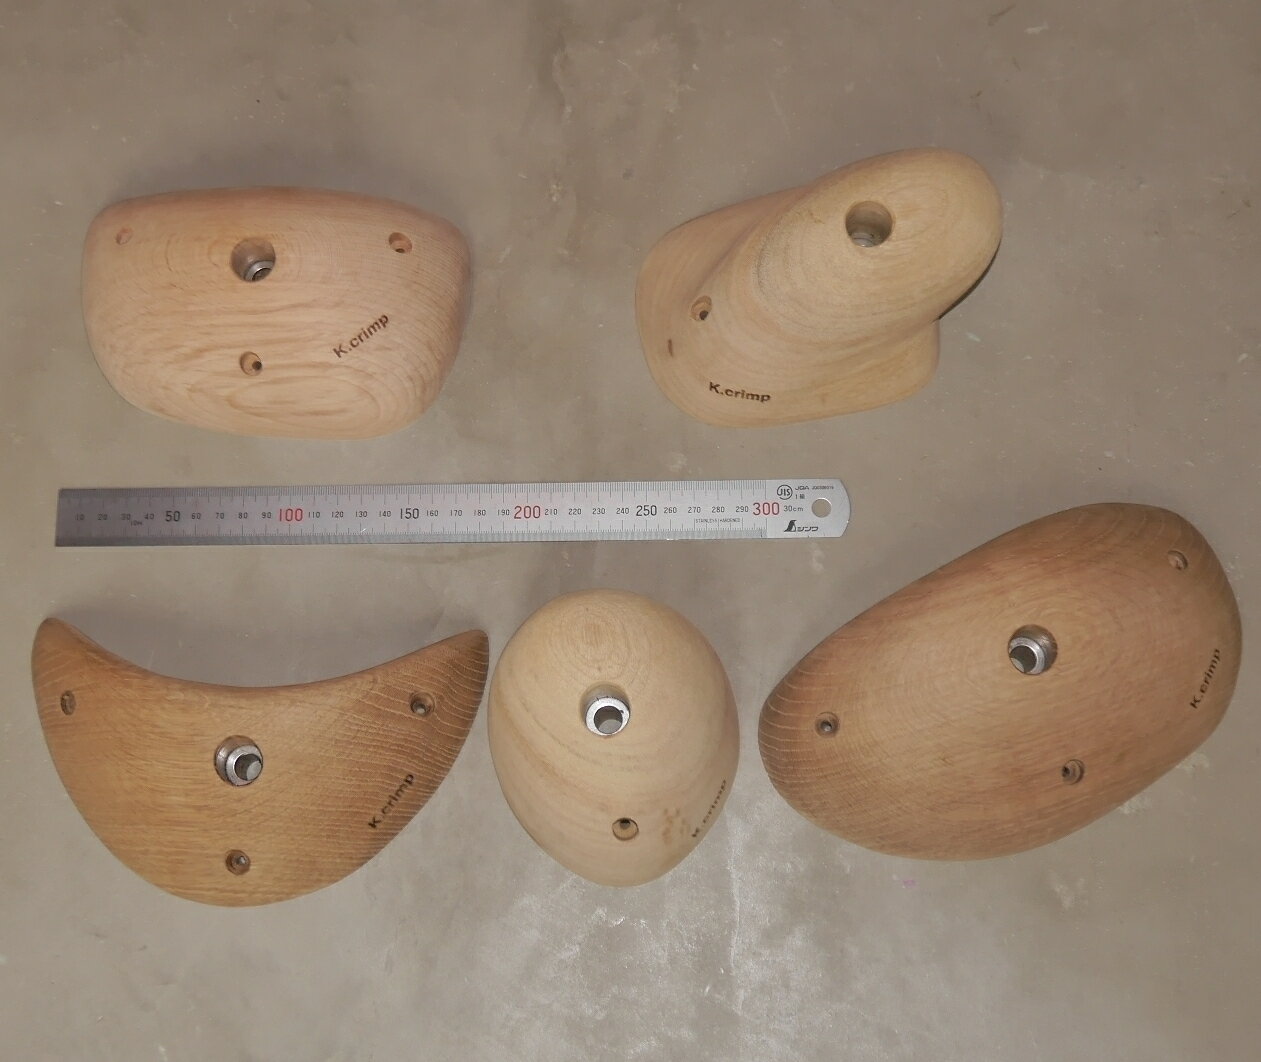 K.crimp 木製ウッドホールド(天然木材製 M10 ボルトオンホールド) 新品 Lサイズ 5個セット MADE IN JAPAN(日本製) ボルダリング クライミング ウッドグリップ ガレージブランド